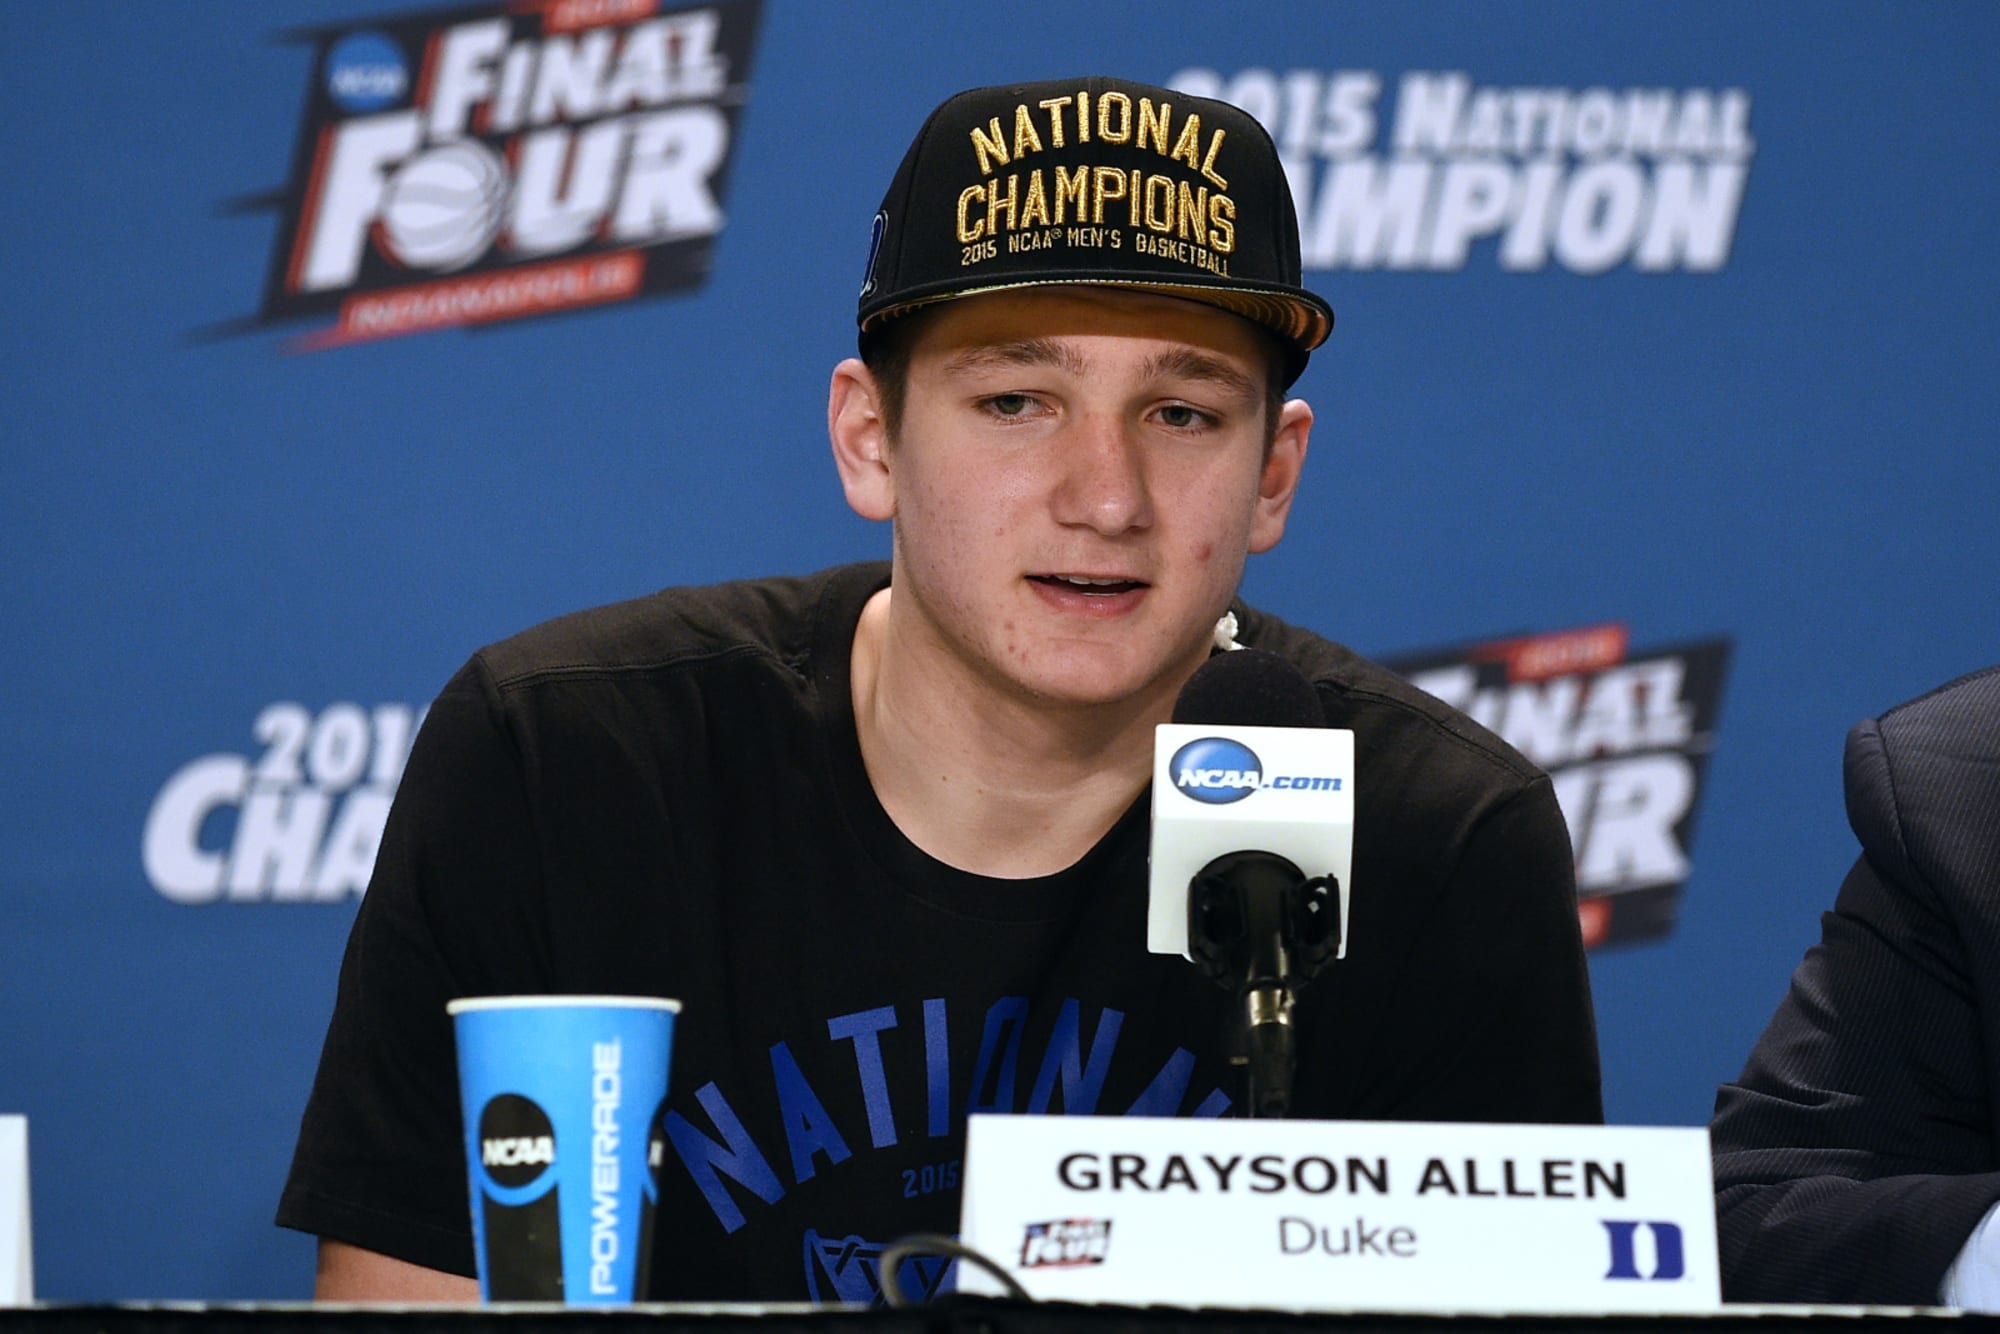 High achiever: How Grayson Allen became a key cog at Duke